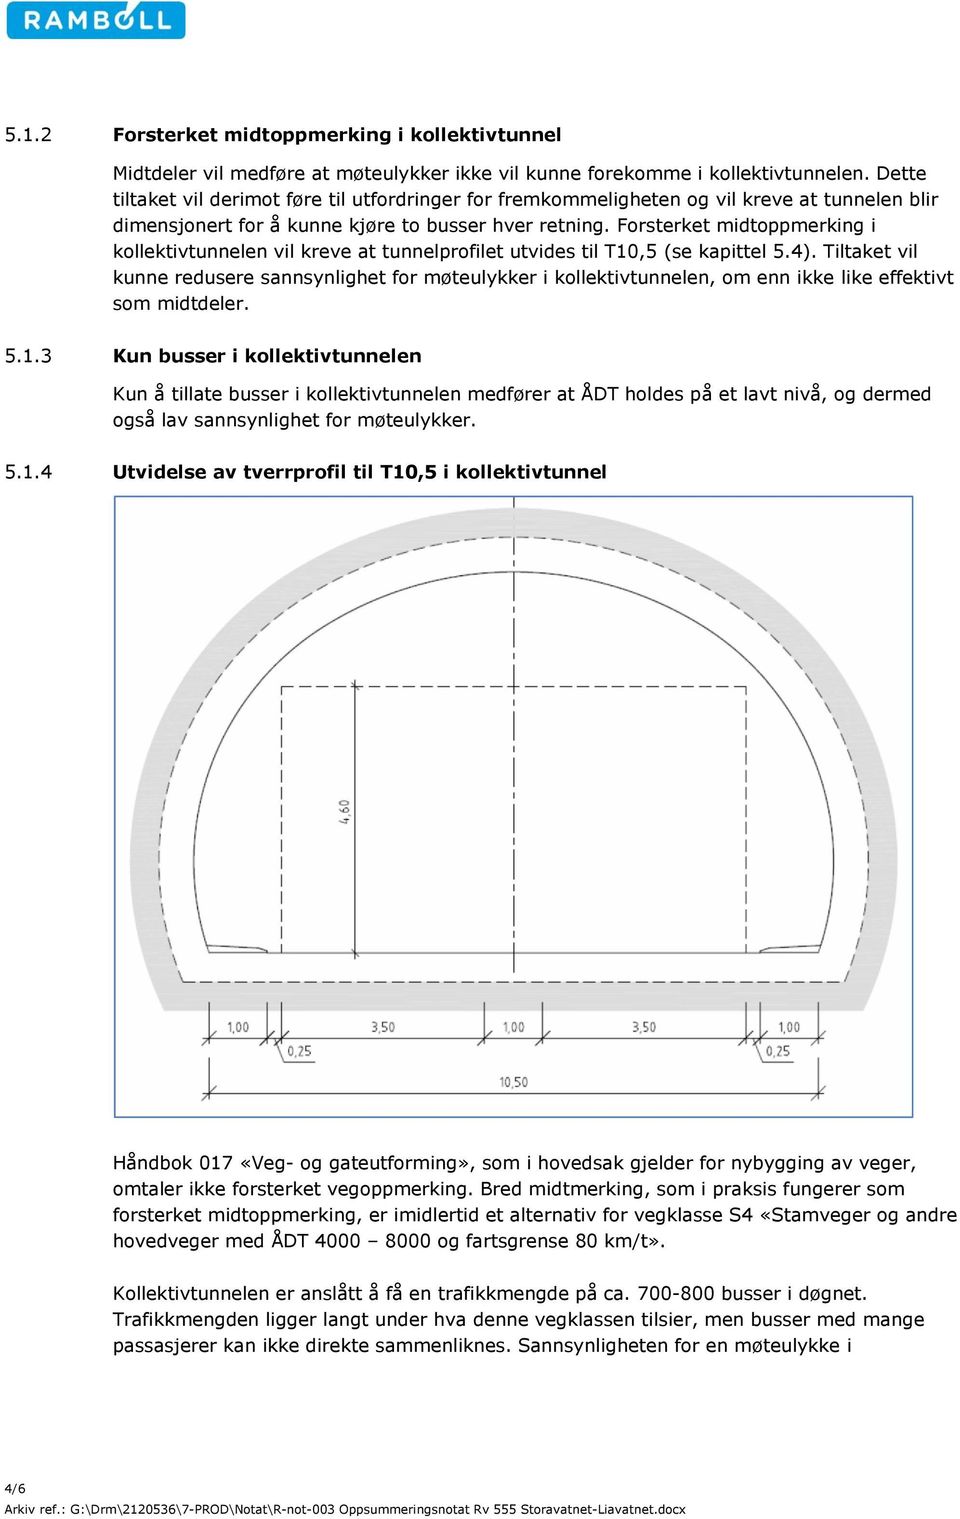 Forsterket midtoppmerking i kollektivtunnelen vil kreve at tunnelprofilet utvides til T10,5 (se kapittel 5.4).